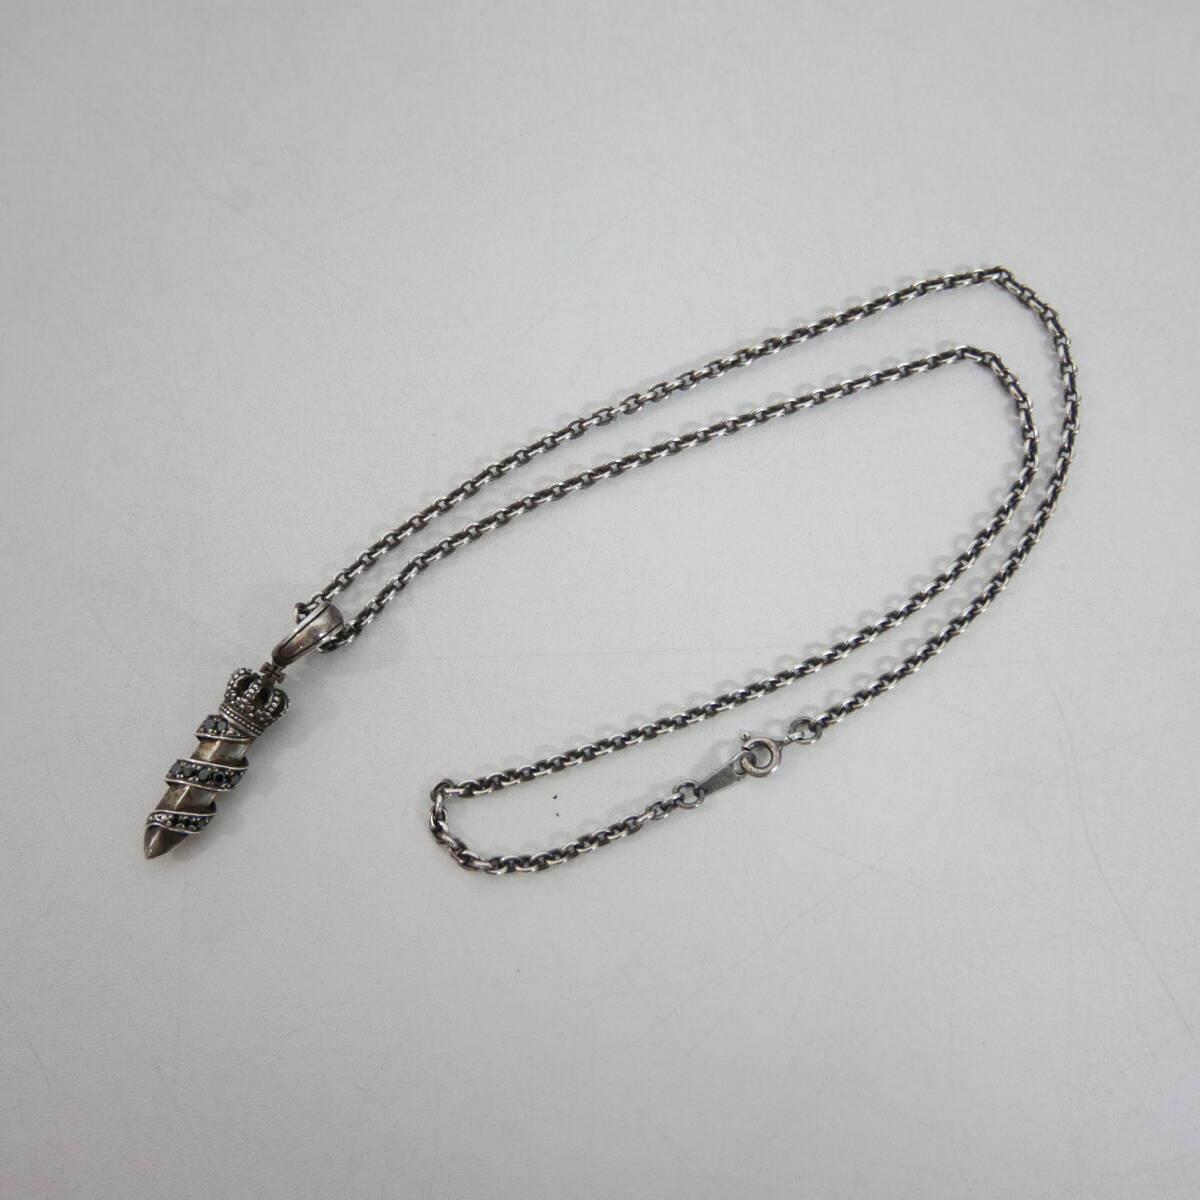 [1 jpy ] excellent hard-to-find Justin Davis×DEFI Justin Davis Crown daga- necklace charm chain set SILVER925 silver 